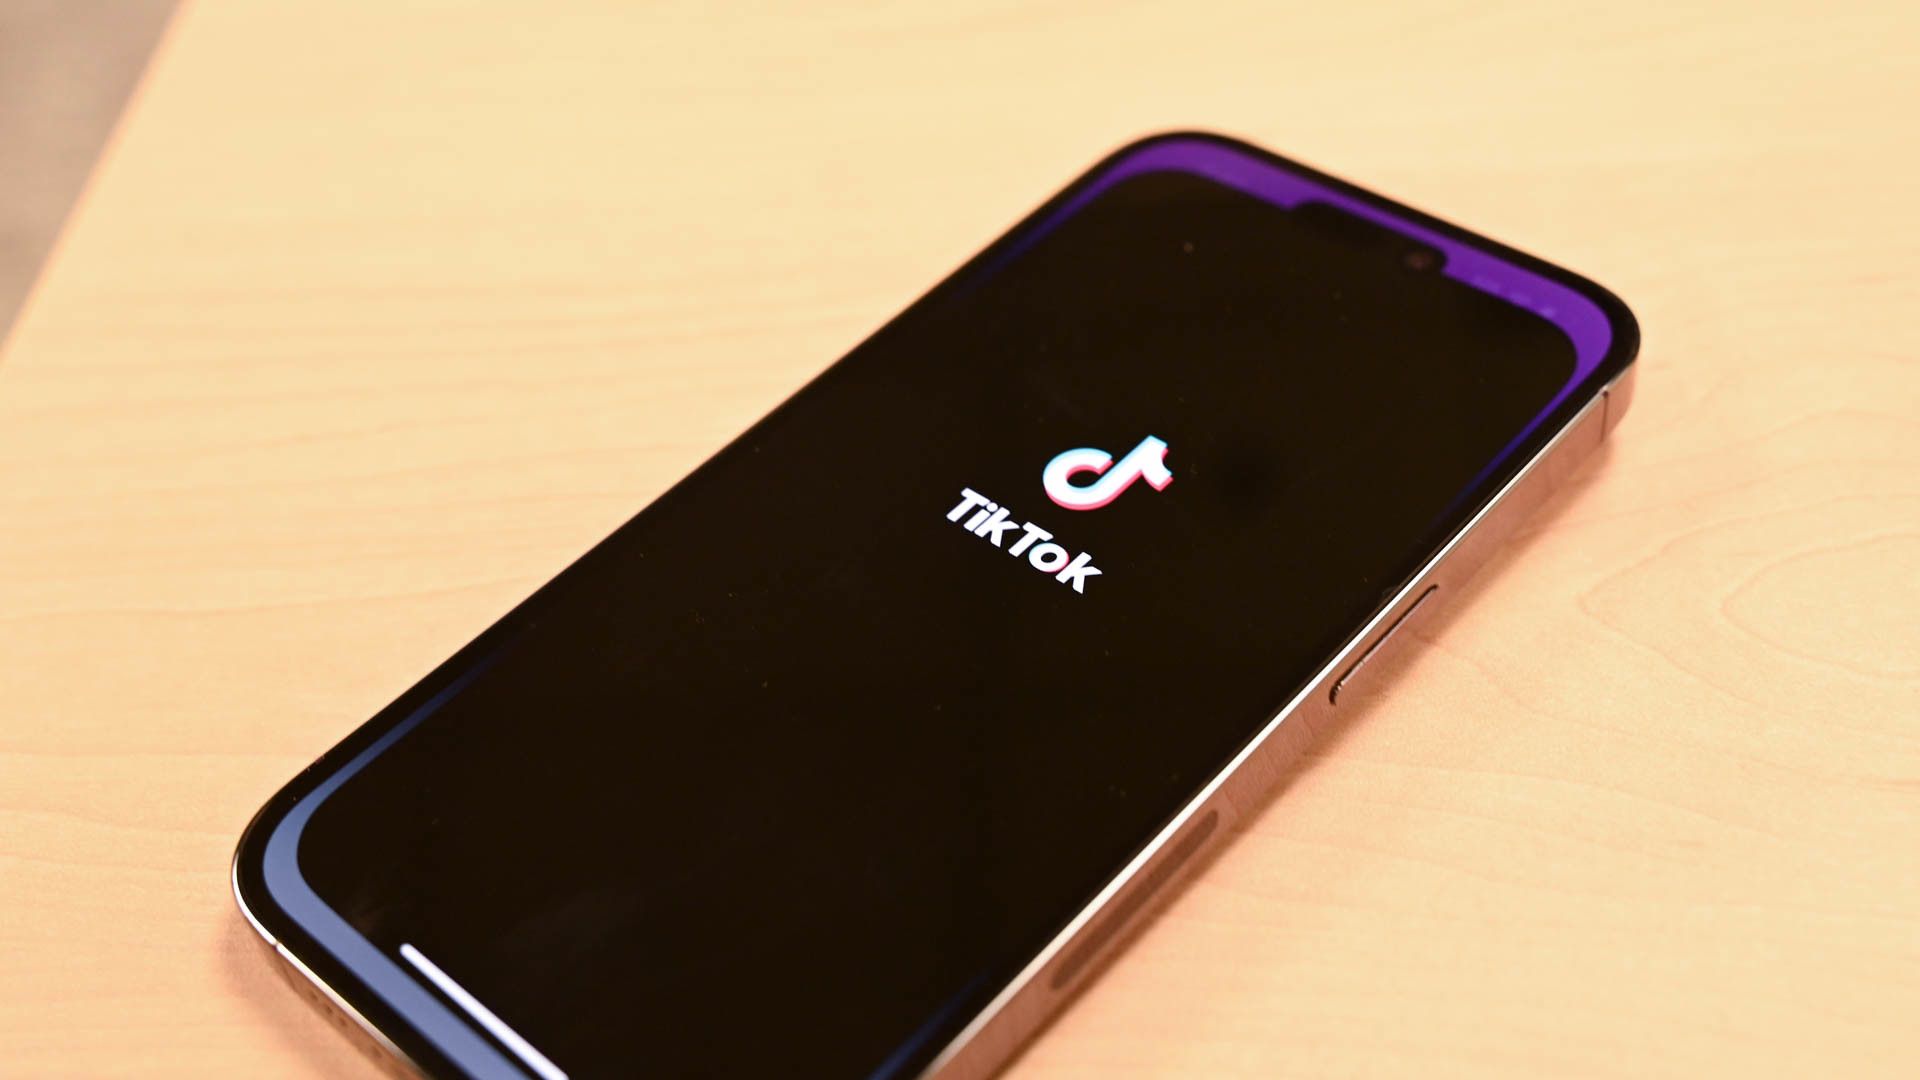 TikTok start up screen on an iPhone